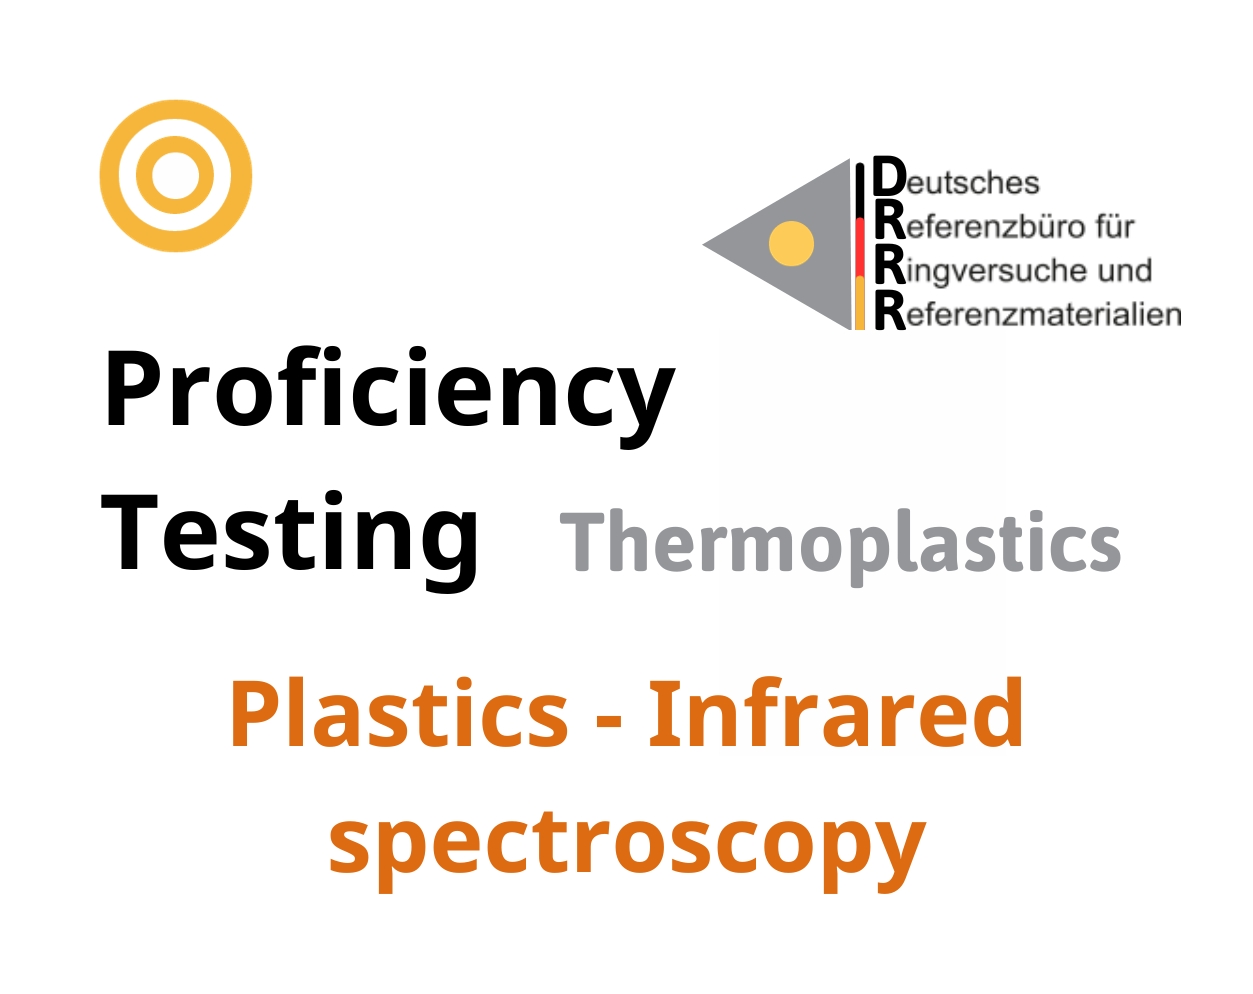 Thử nghiệm thành thạo (ISO 17043) nhựa nhiệt dẻo trên nền mẫu Plastics - Infrared spectroscopy, Hãng DRRR, Đức